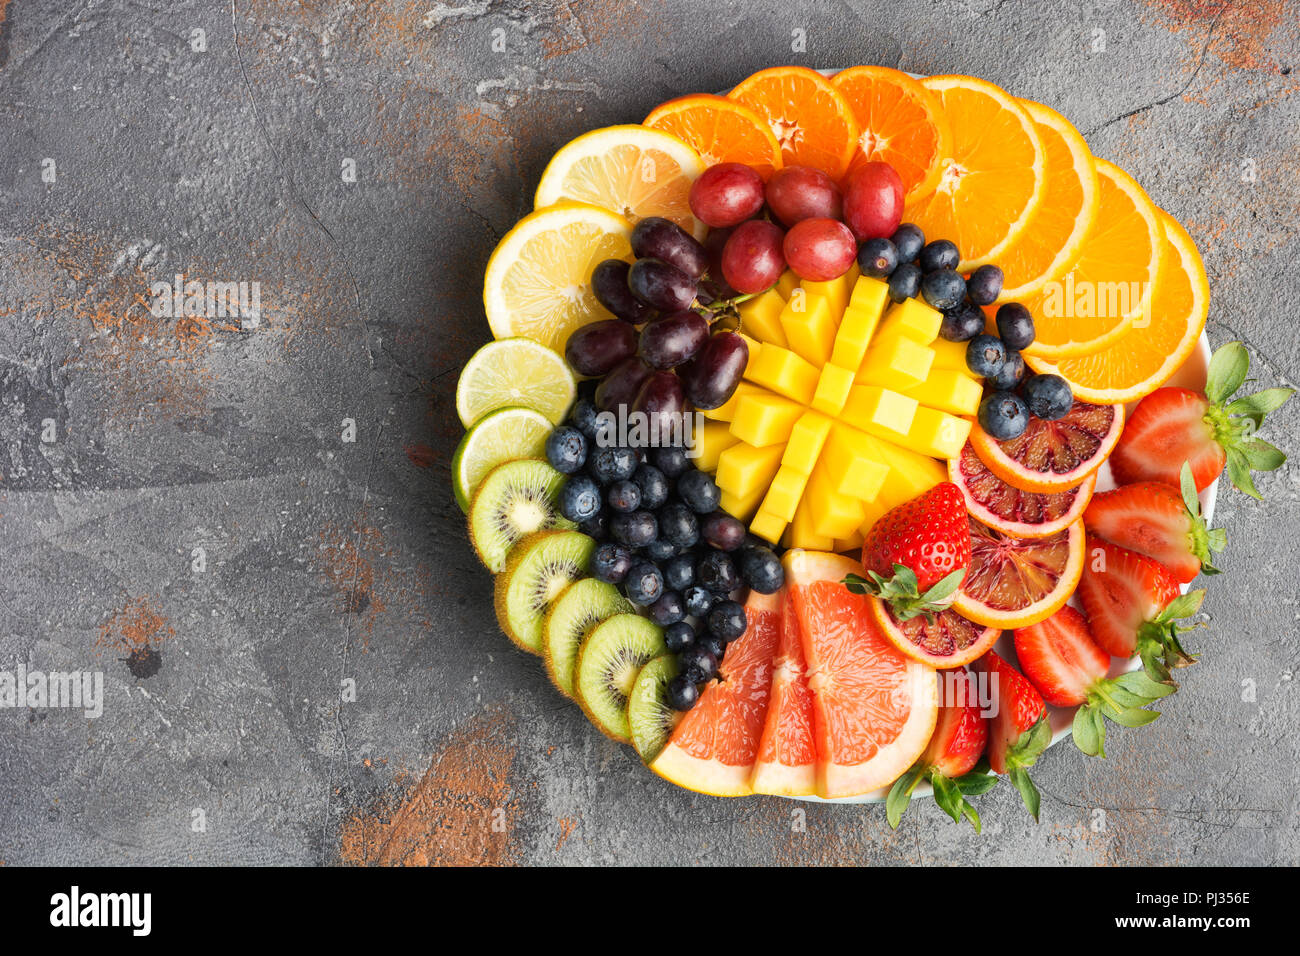 Assortiment de fruits coupés en couleurs arc-en-ciel raisins oranges fraises kiwis mangue pamplemousses sur les bleuets la table de béton gris, vue du dessus, copiez l'espace, selective focus Banque D'Images